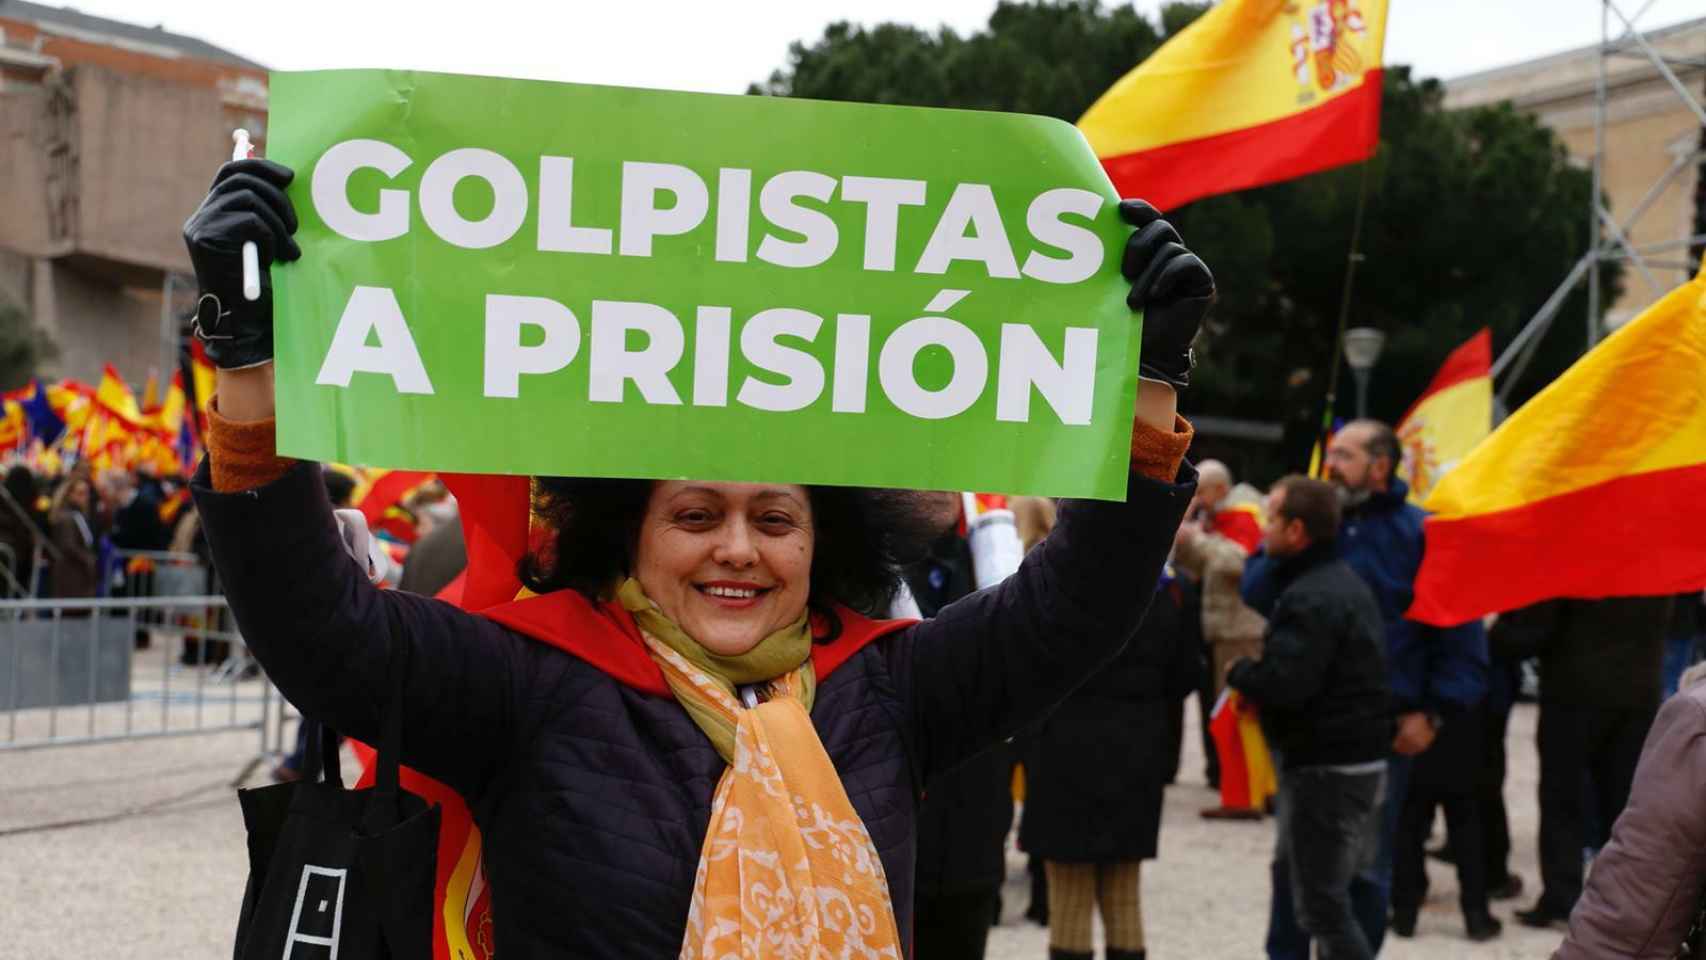 Golpistas a prisión y Por una España unida han sido los lemas más coreados entre la multitud, que reclamó la dimisión del presidente del Gobierno, Pedro Sánchez, en numerosas ocasiones.